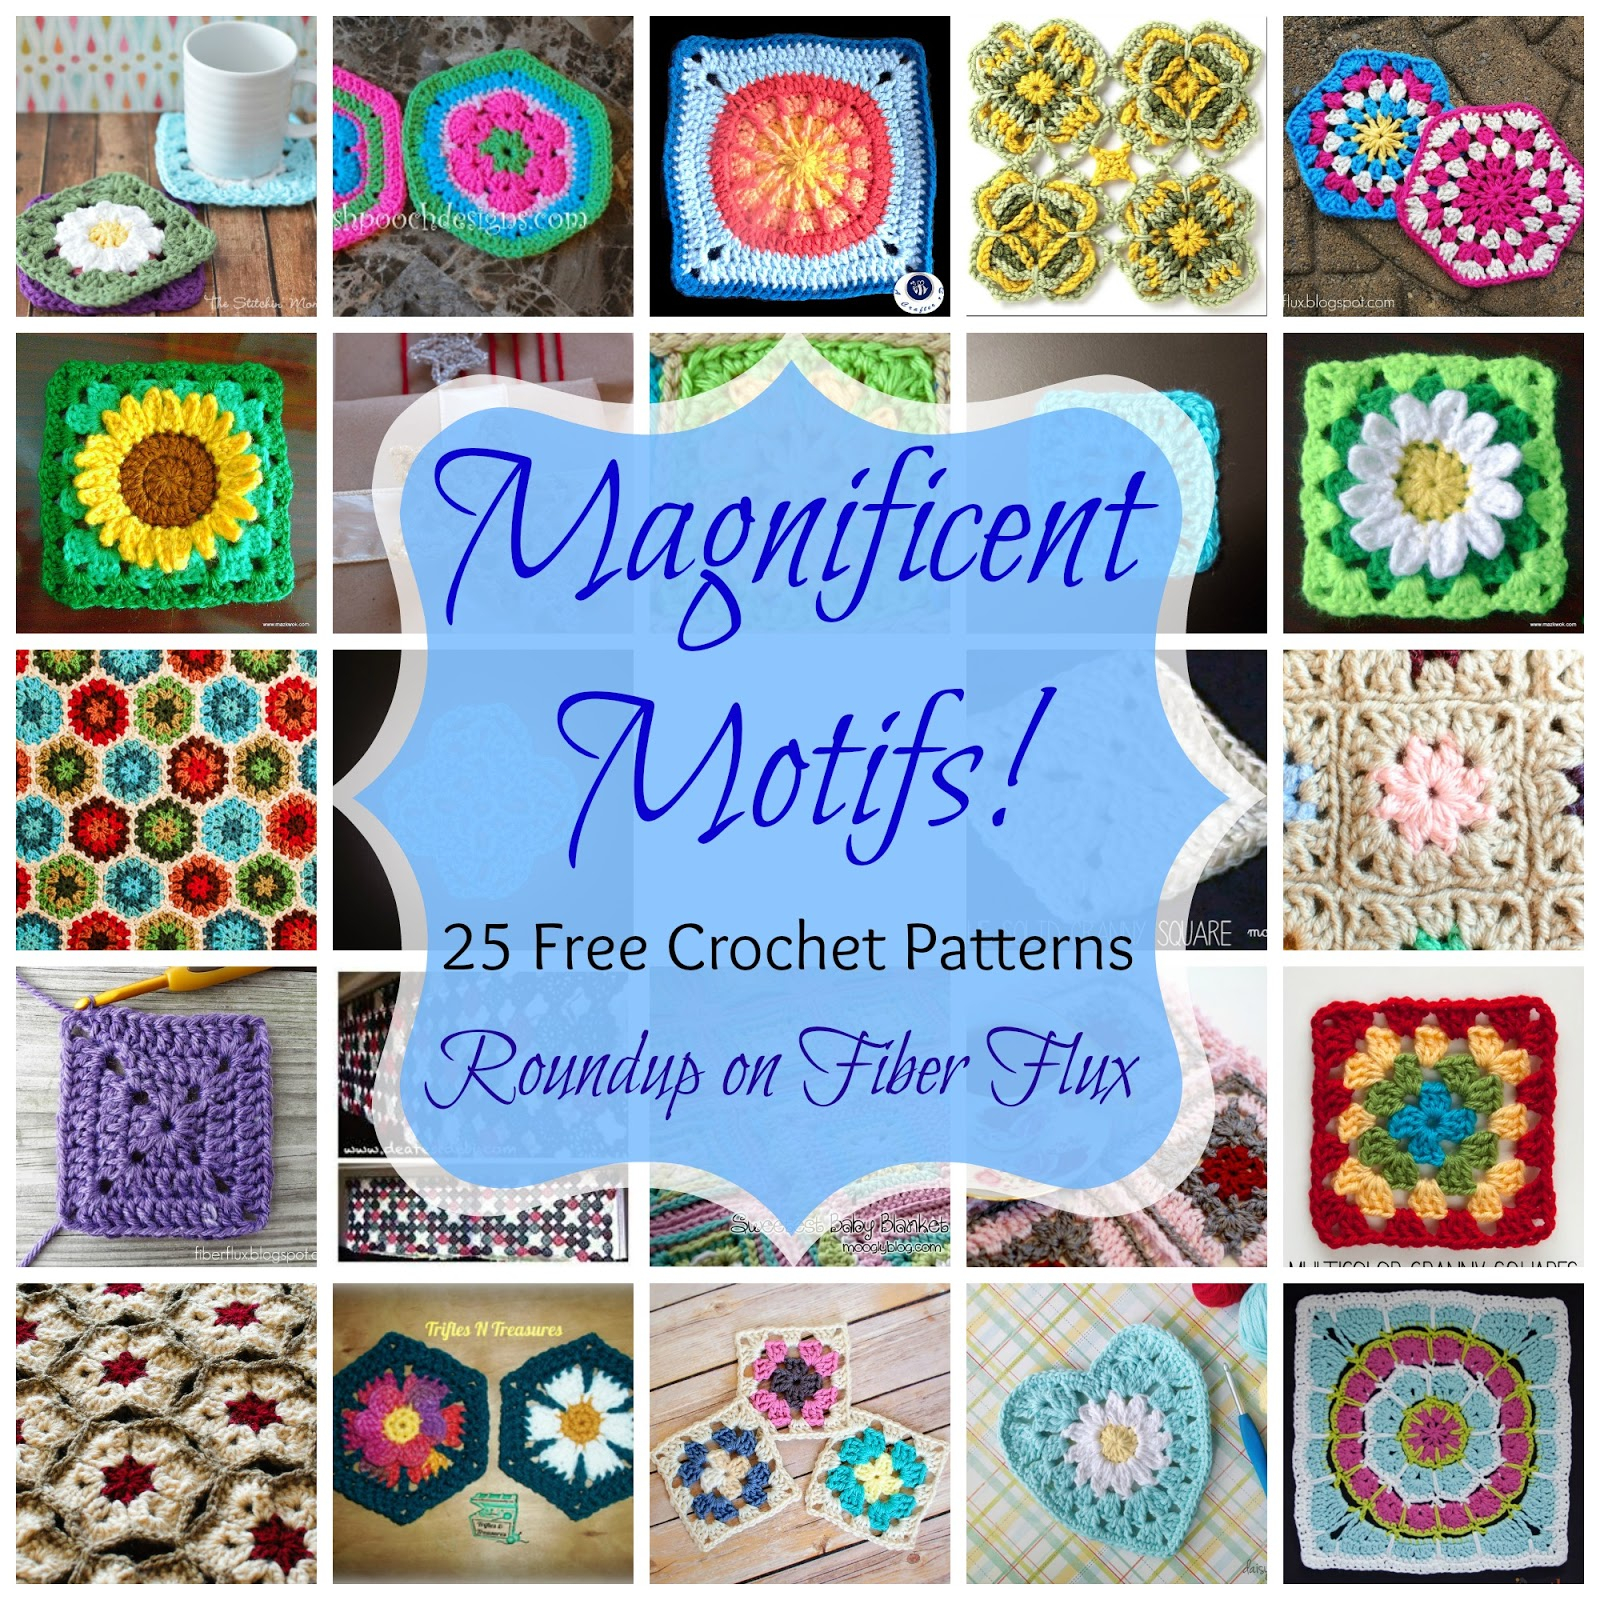 Motif Patterns Crochet Fiber Flux Magnificent Motifs 25 Free Crochet Patterns